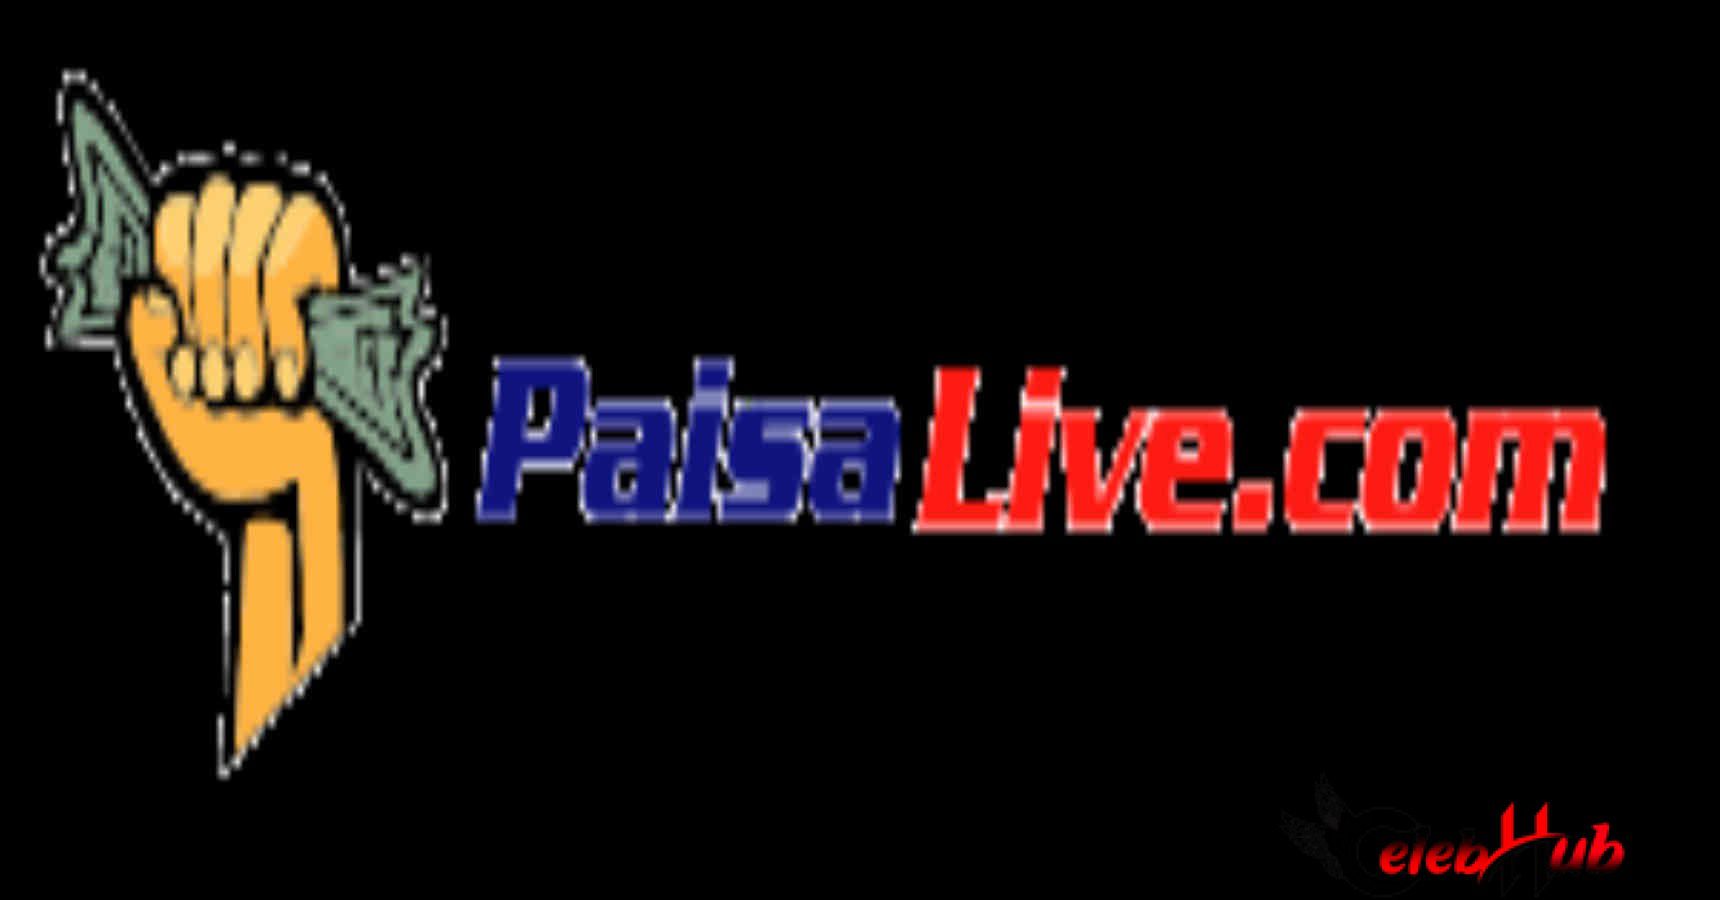 Paisa.live.com